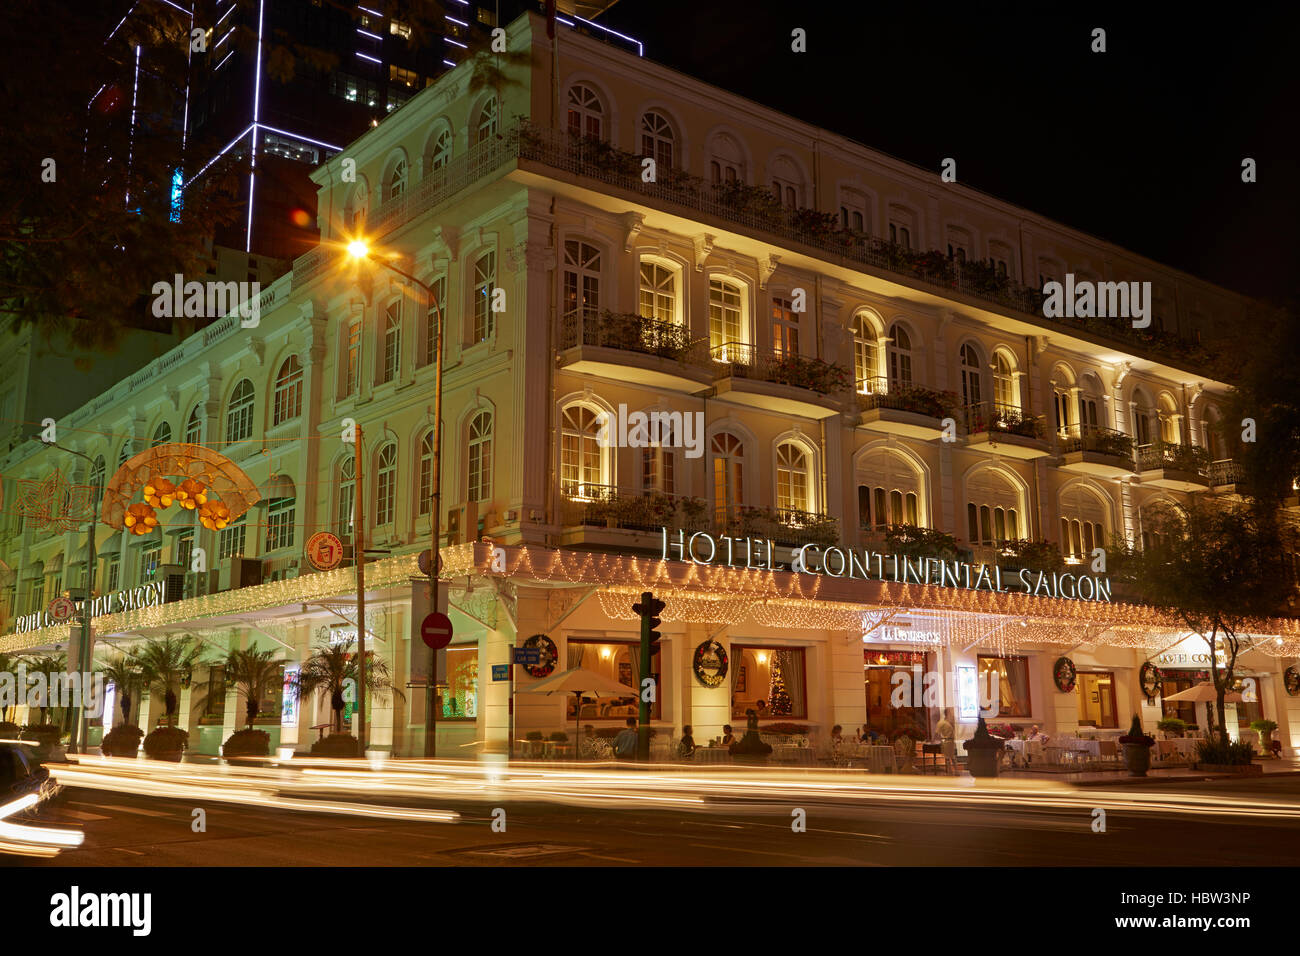 Hotel Continental Saigon la nuit, Ho Chi Minh Ville (Saigon), Vietnam Banque D'Images